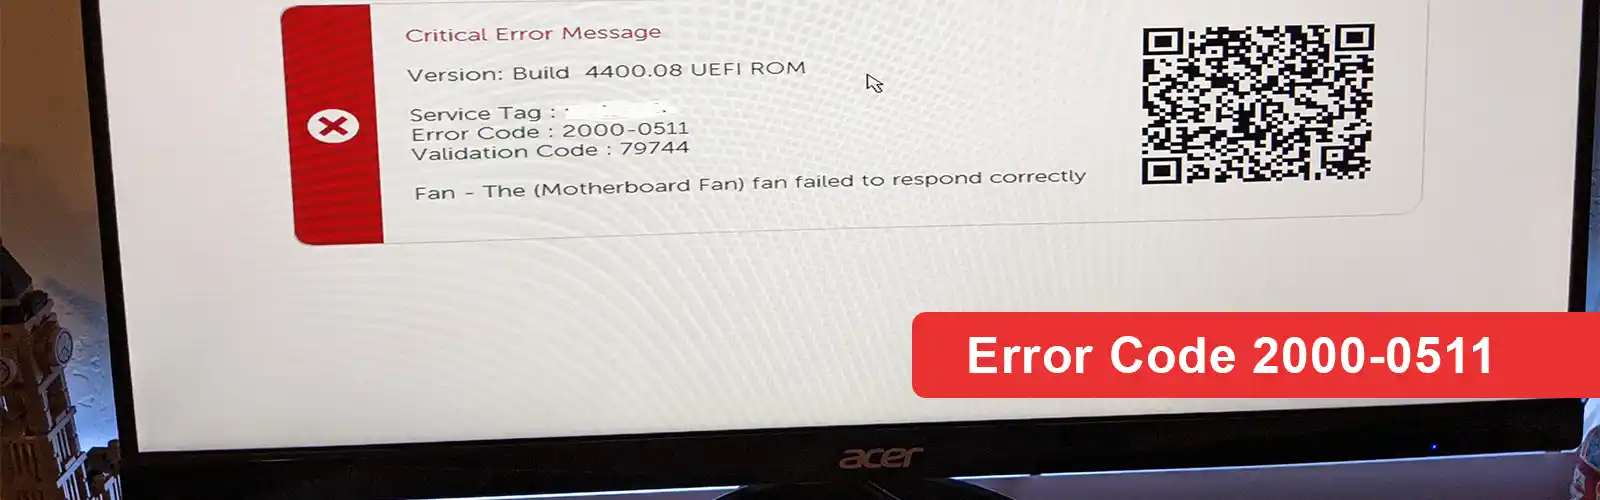 Error Code 2000-0511